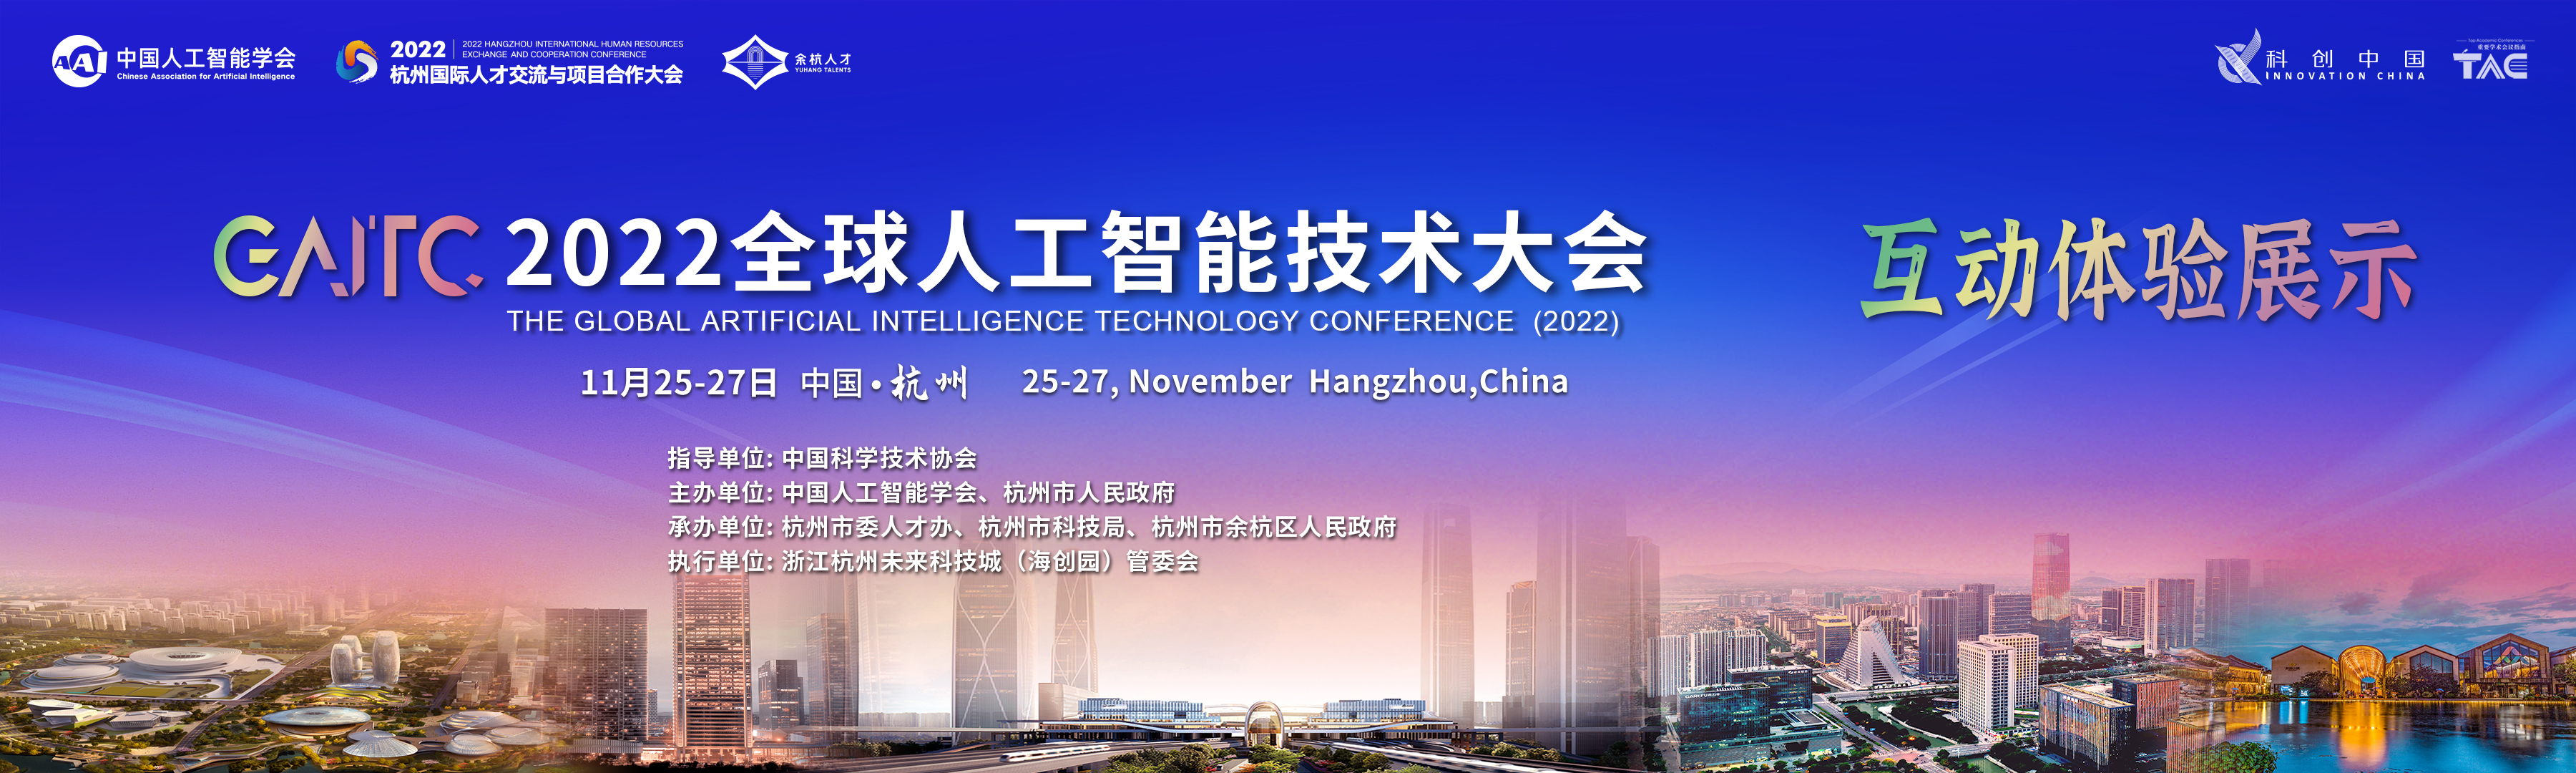 滚动-2022杭州全球人工智能大会